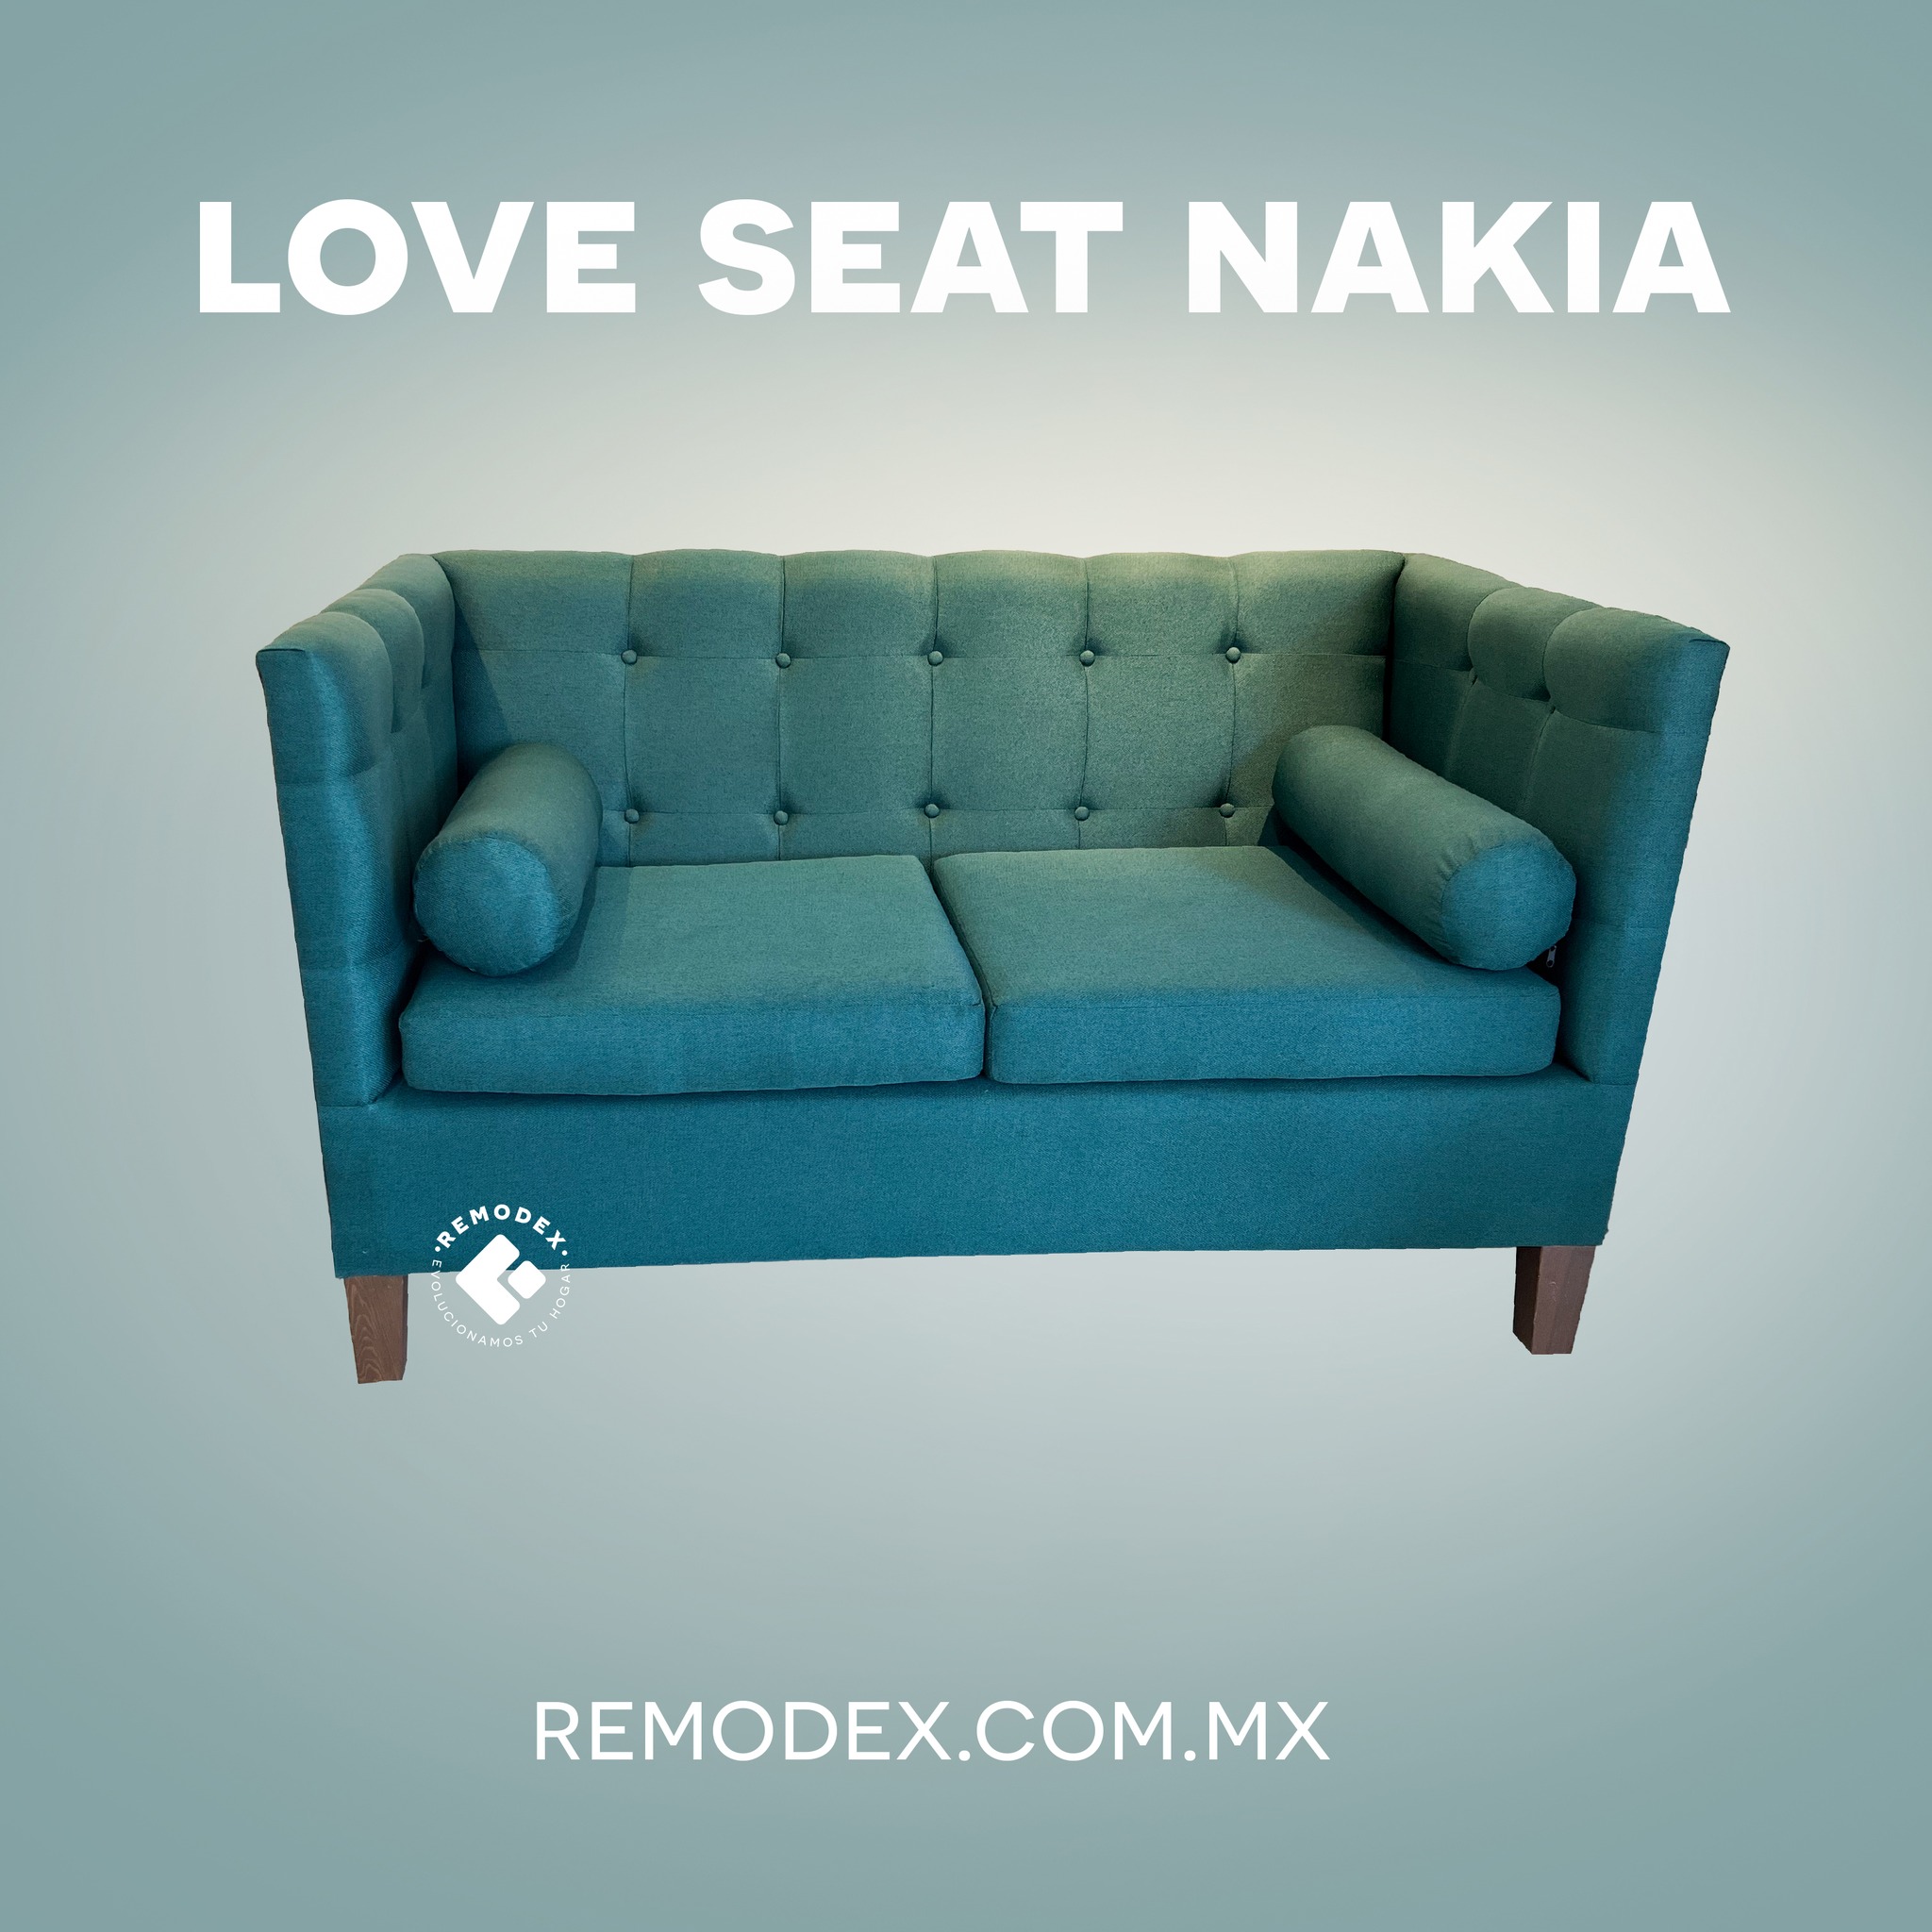 LOVE SEAT NAKIA